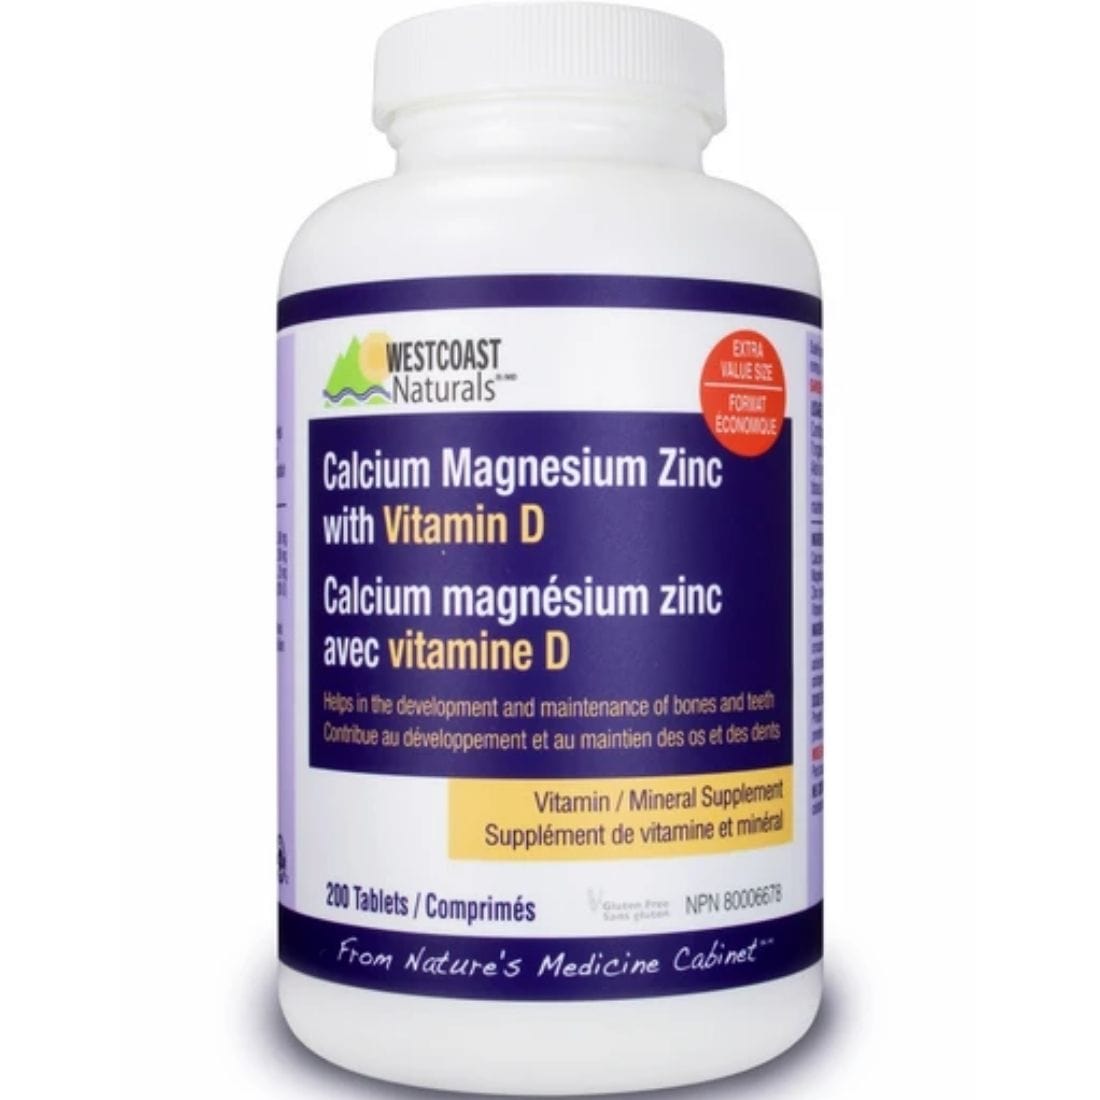 Westcoast Naturals Calcium Magnesium Zinc with Vitamin D